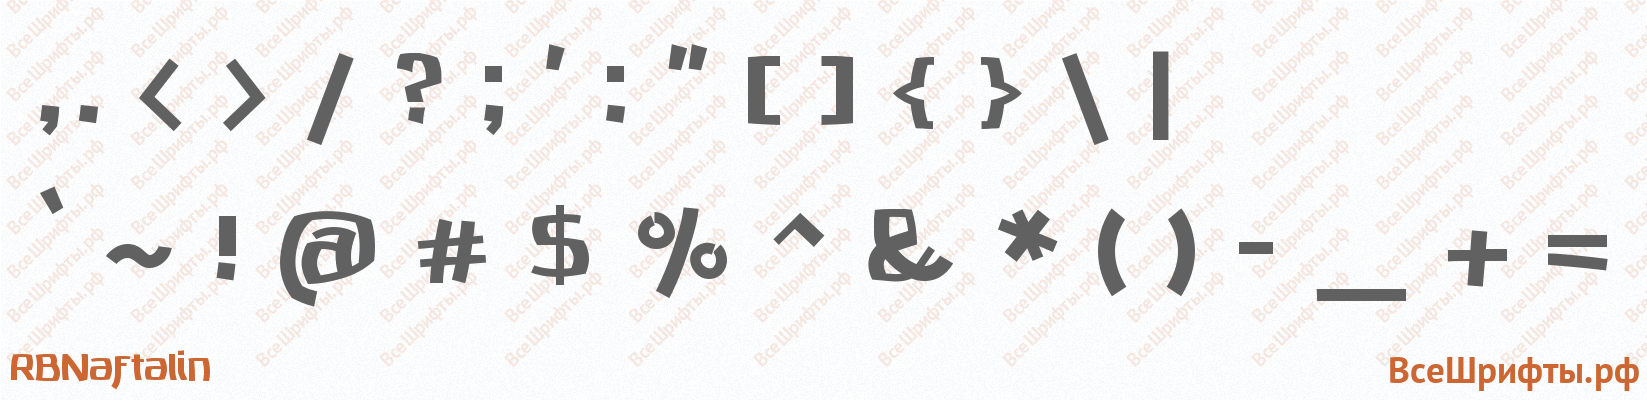 Шрифт RBNaftalin со знаками препинания и пунктуации